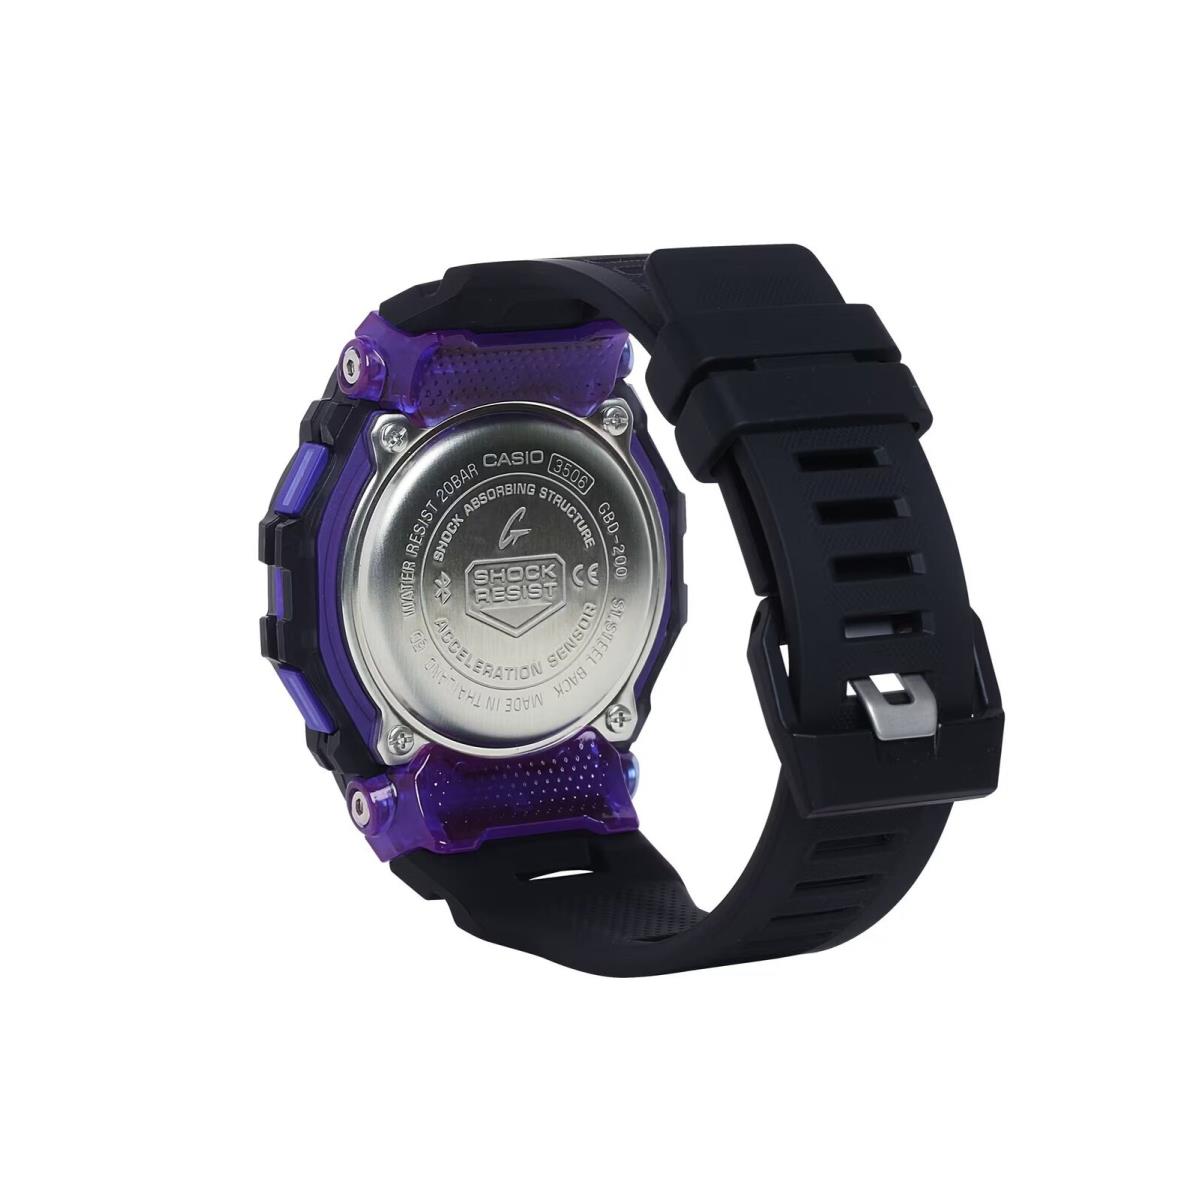 Casio G-shock GBD-200SM-1A6 G-squad Bluetooth Purple/black Digital Watch